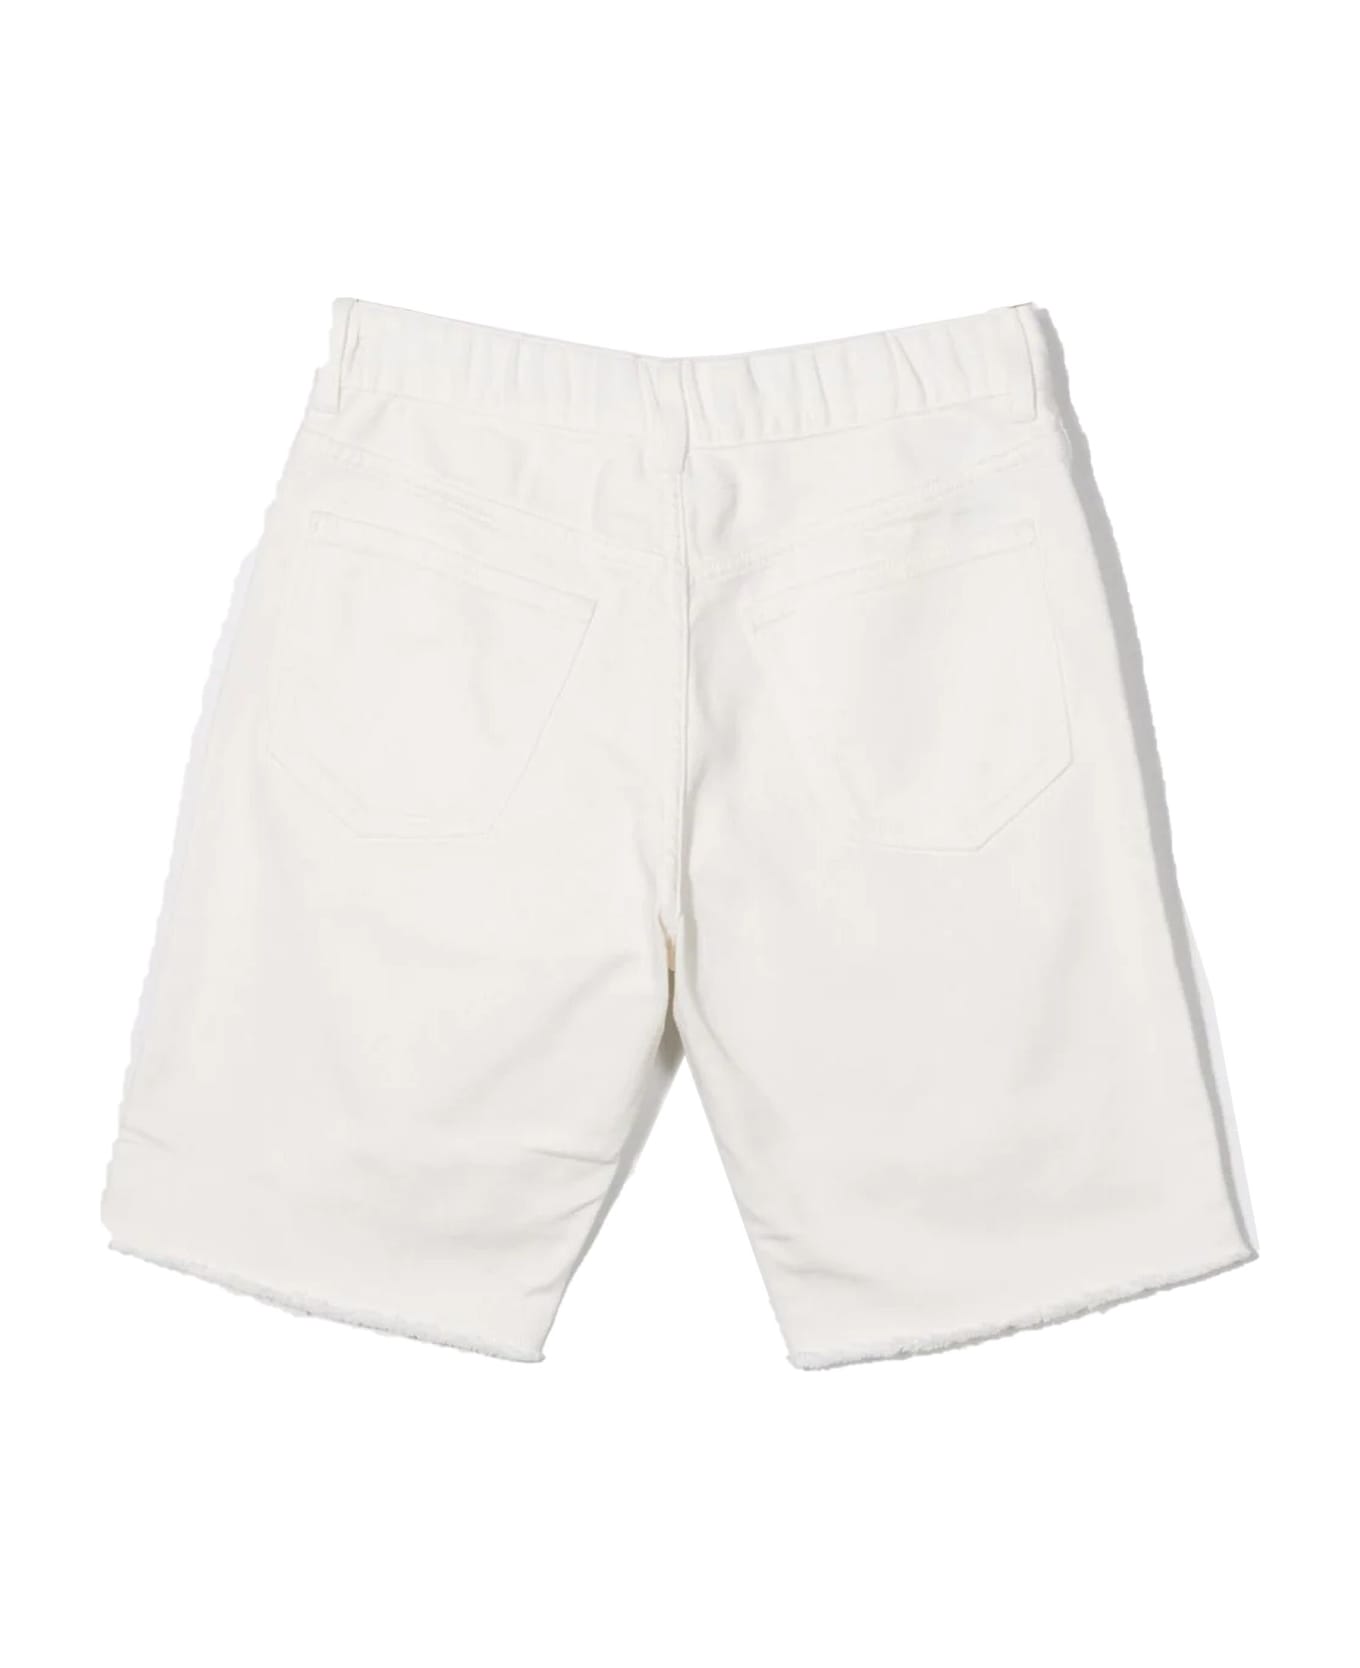 Maison Margiela White Cotton Shorts - Bianco